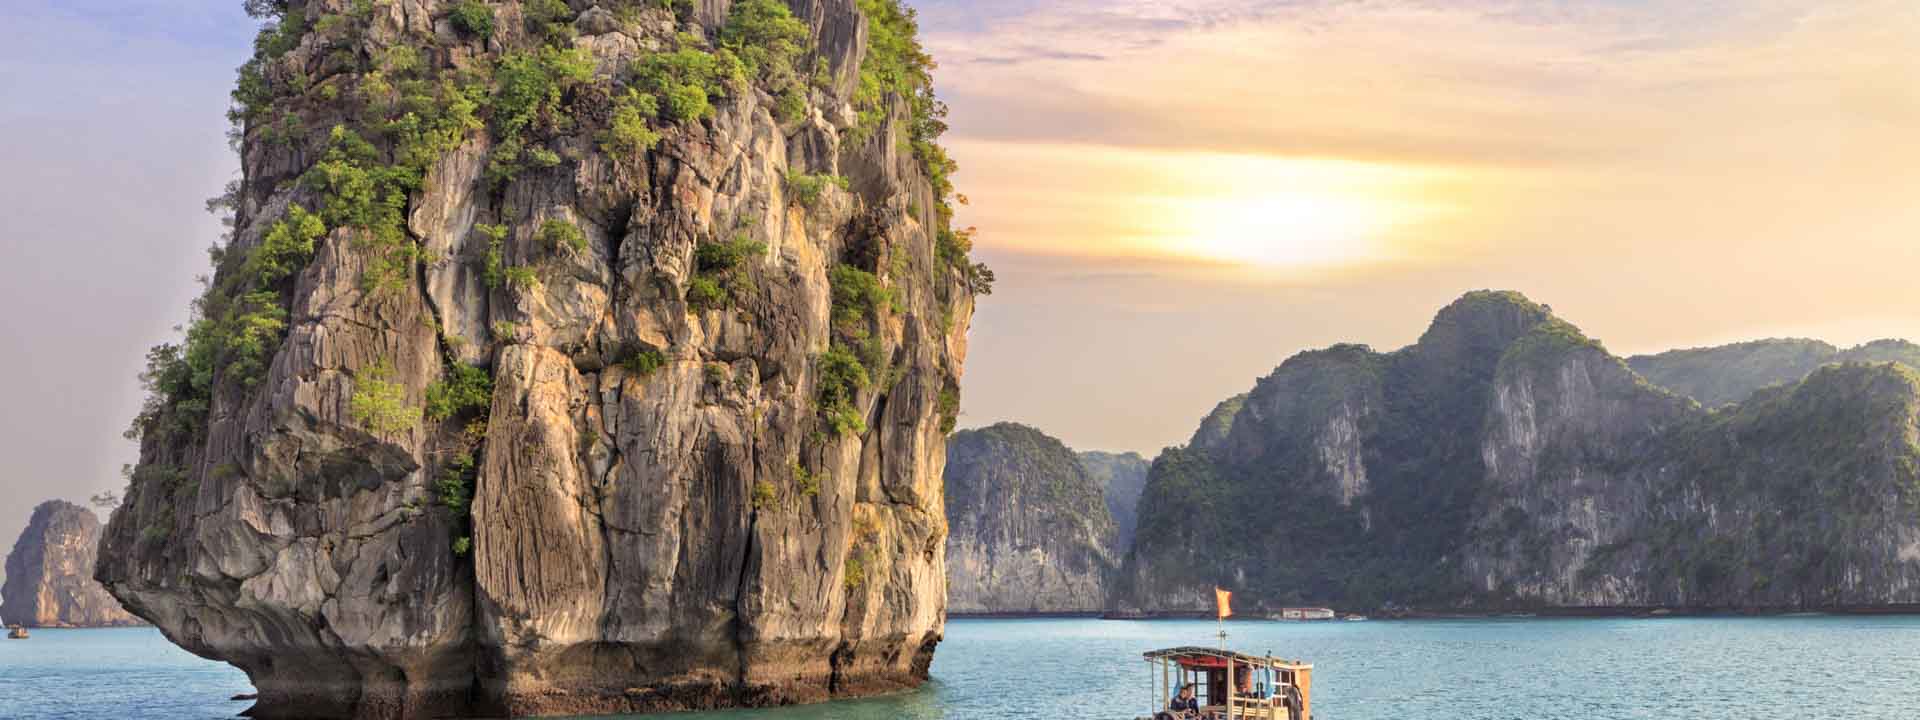 Vacanza stupenda in Vietnam e Thaiandia 19 giorni